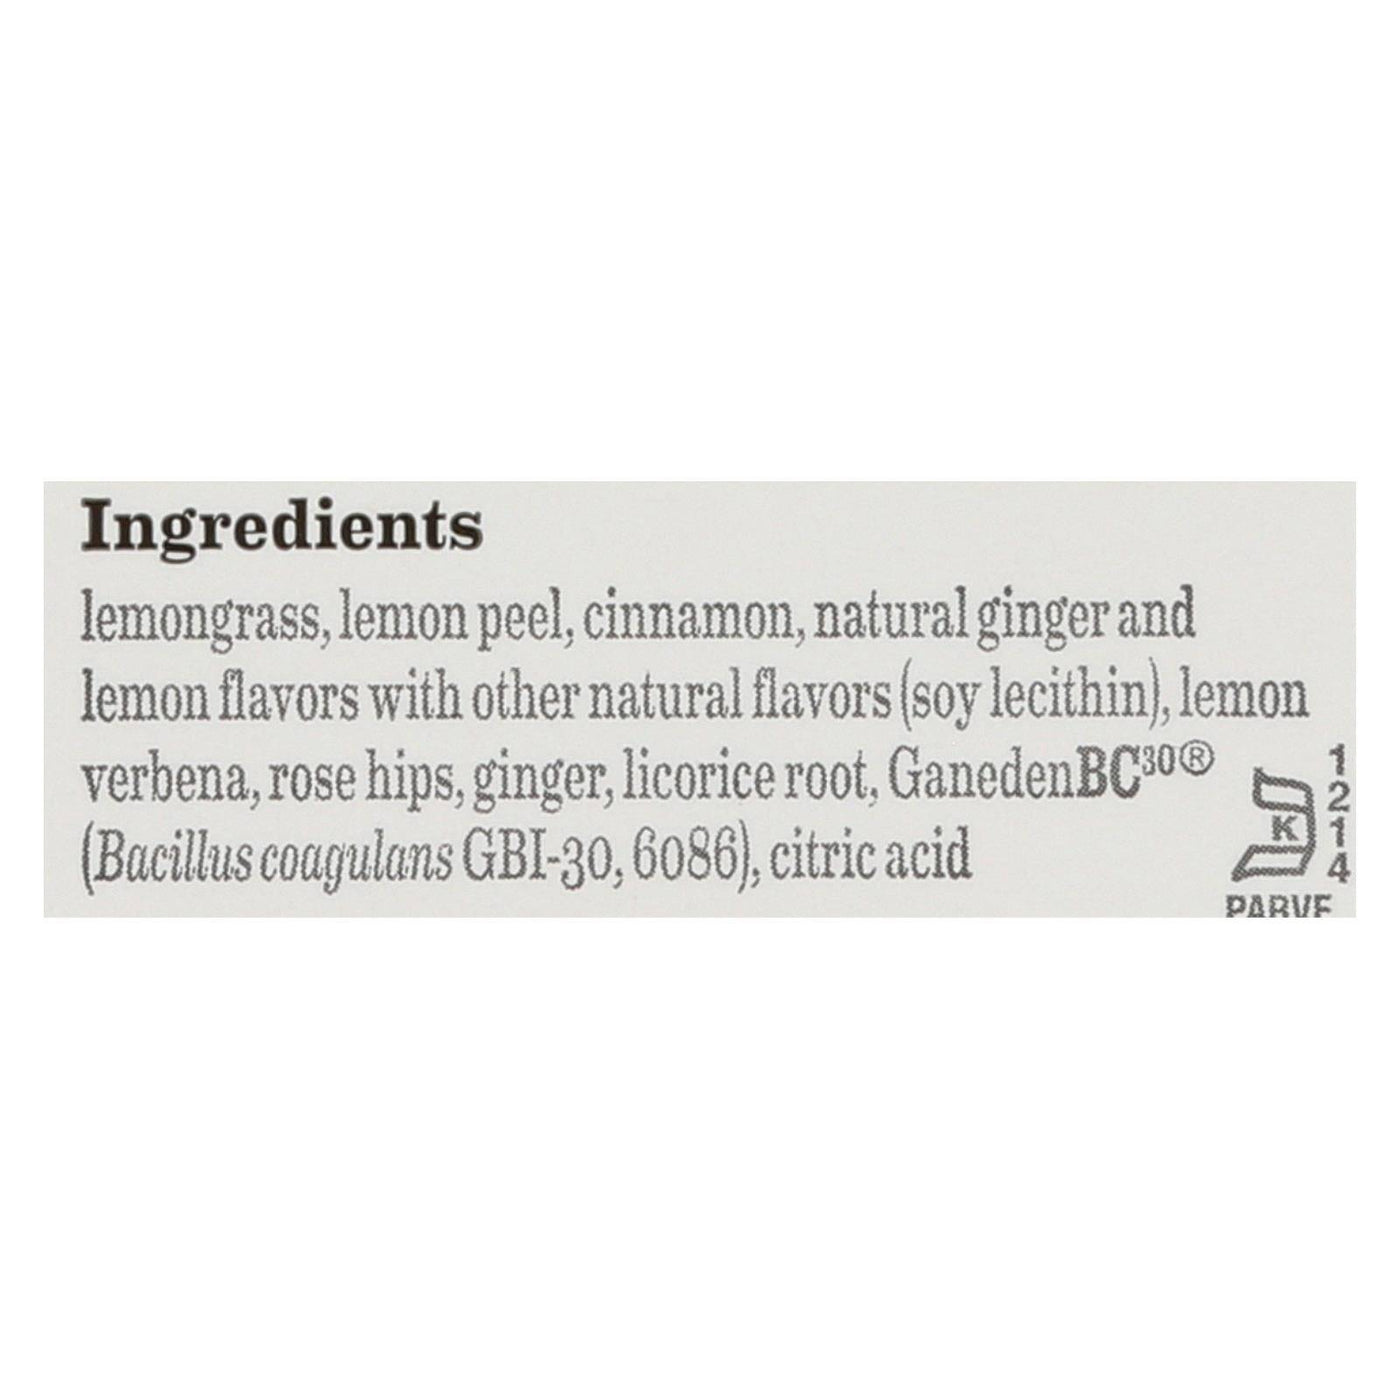 Bigelow Tea Herbal Tea - Plus Lemon Ginger - Case Of 6 - 18 Bag | OnlyNaturals.us